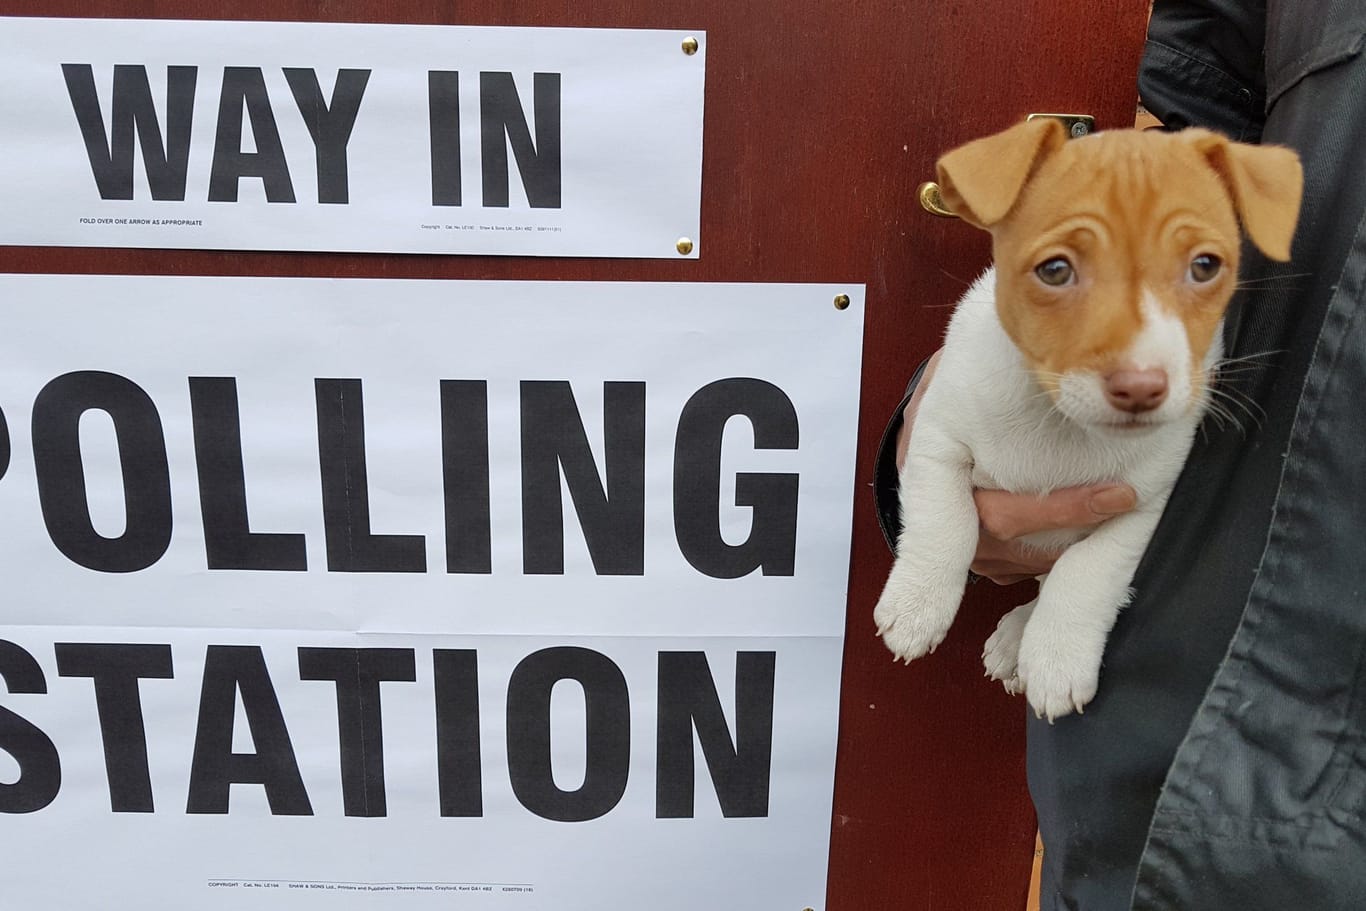 #dogsatpollingstations: Briten bringen ihre Tiere mit zur Wahl und posten sie auf Social Media, um andere Menschen zur Wahl zu ermutigen.